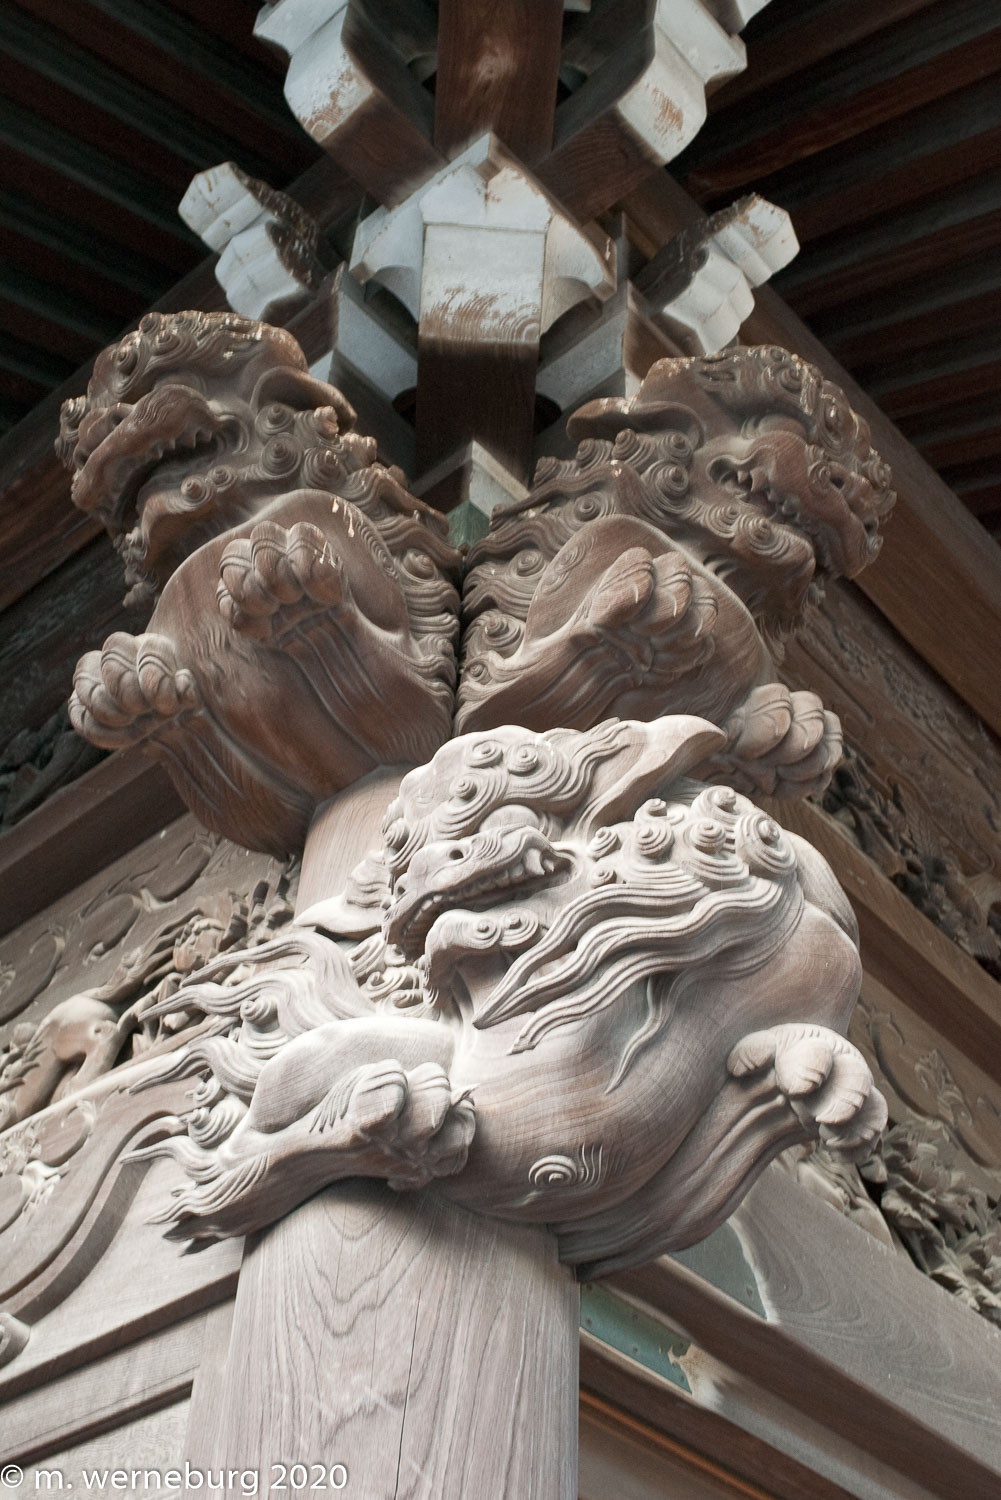 carved wooden detail at Shibamata Taishakuten